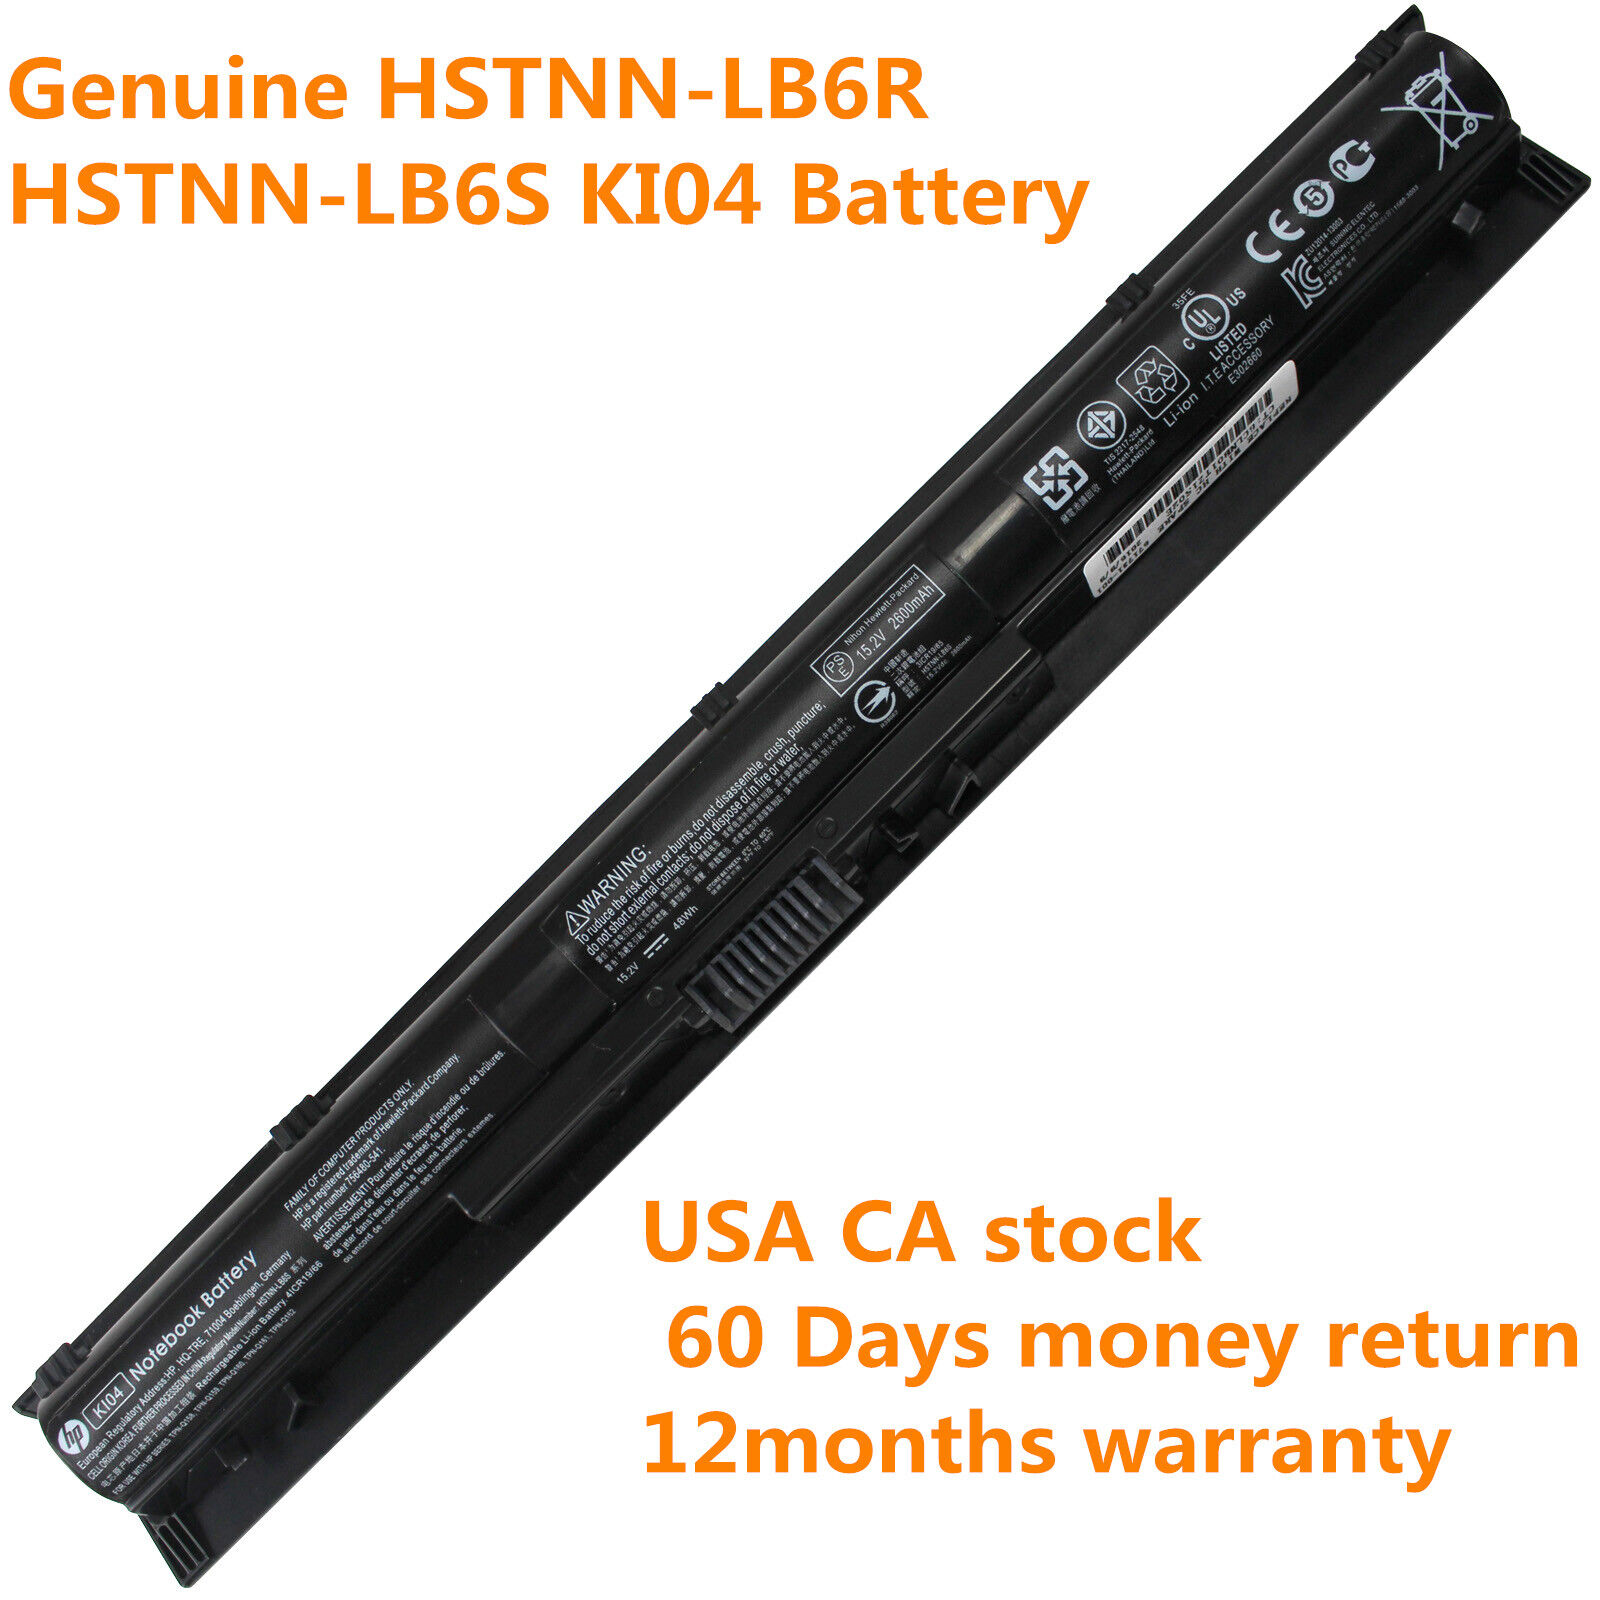 Genuine KI04 Batter for HP Pavilion 14 15 17 HSTNN-DB6T 800049-001 HSTNN-LB6S